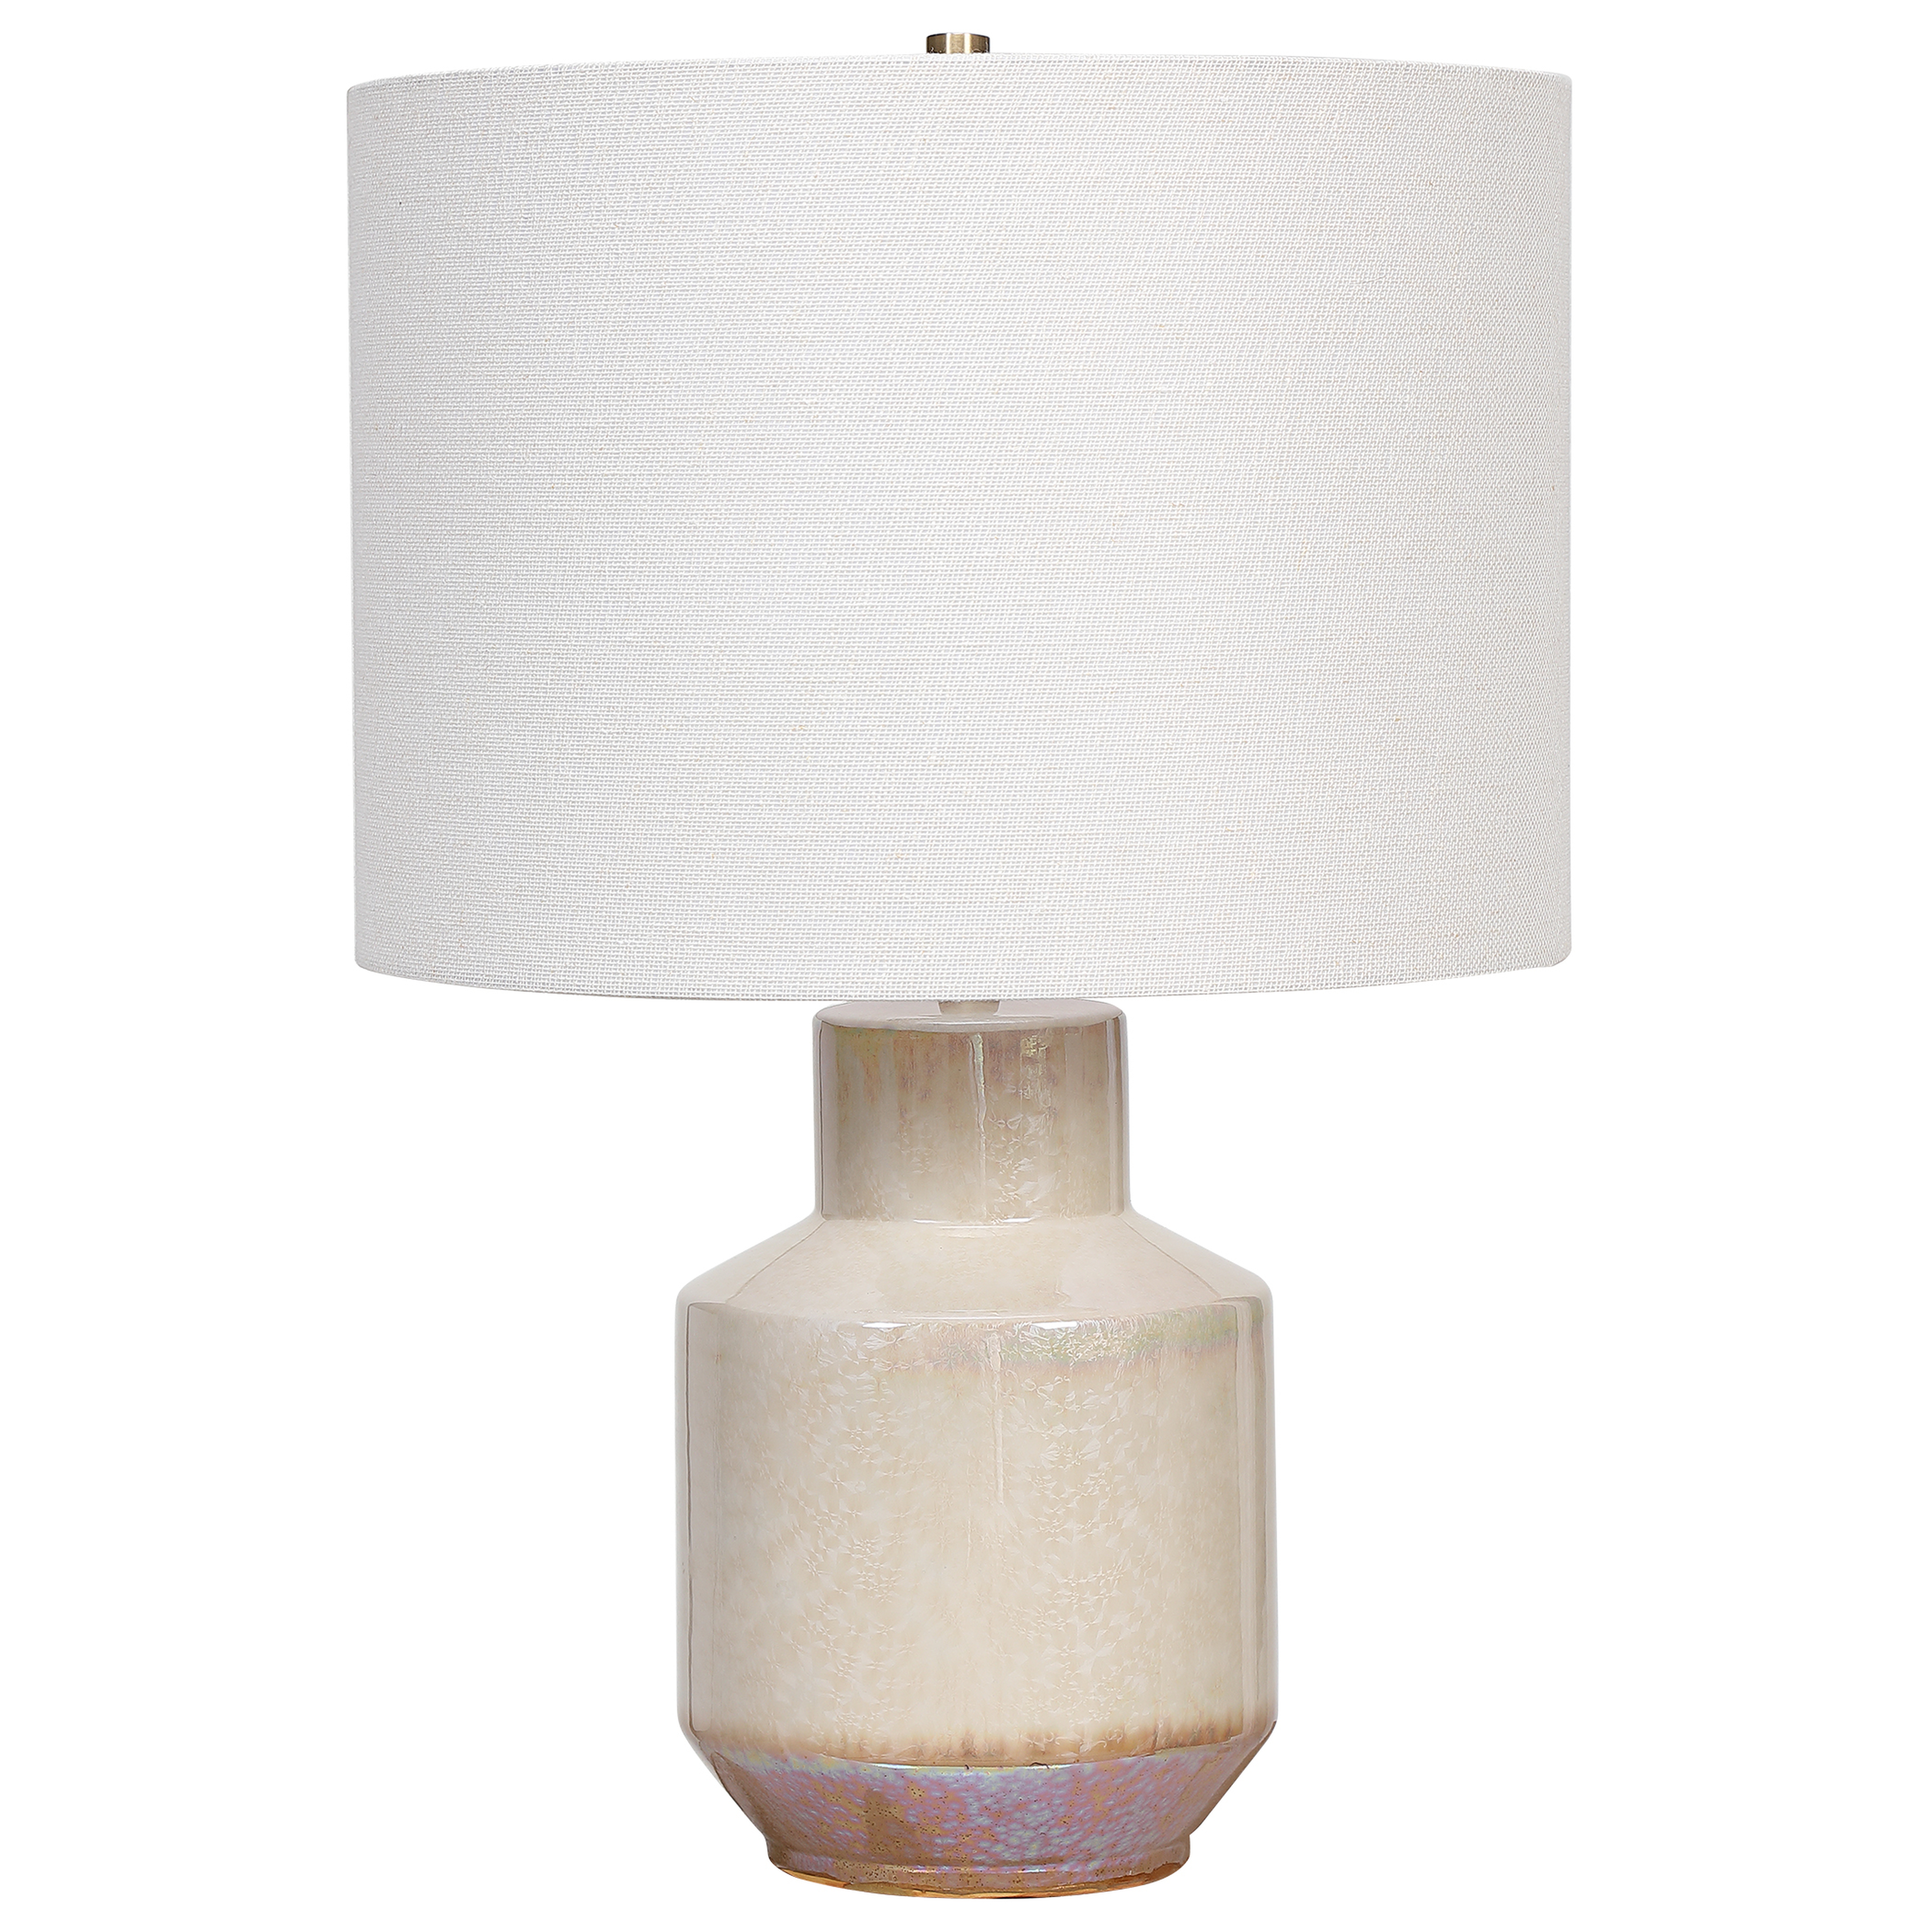 Iridescent Cream Table Lamp - Uttermost